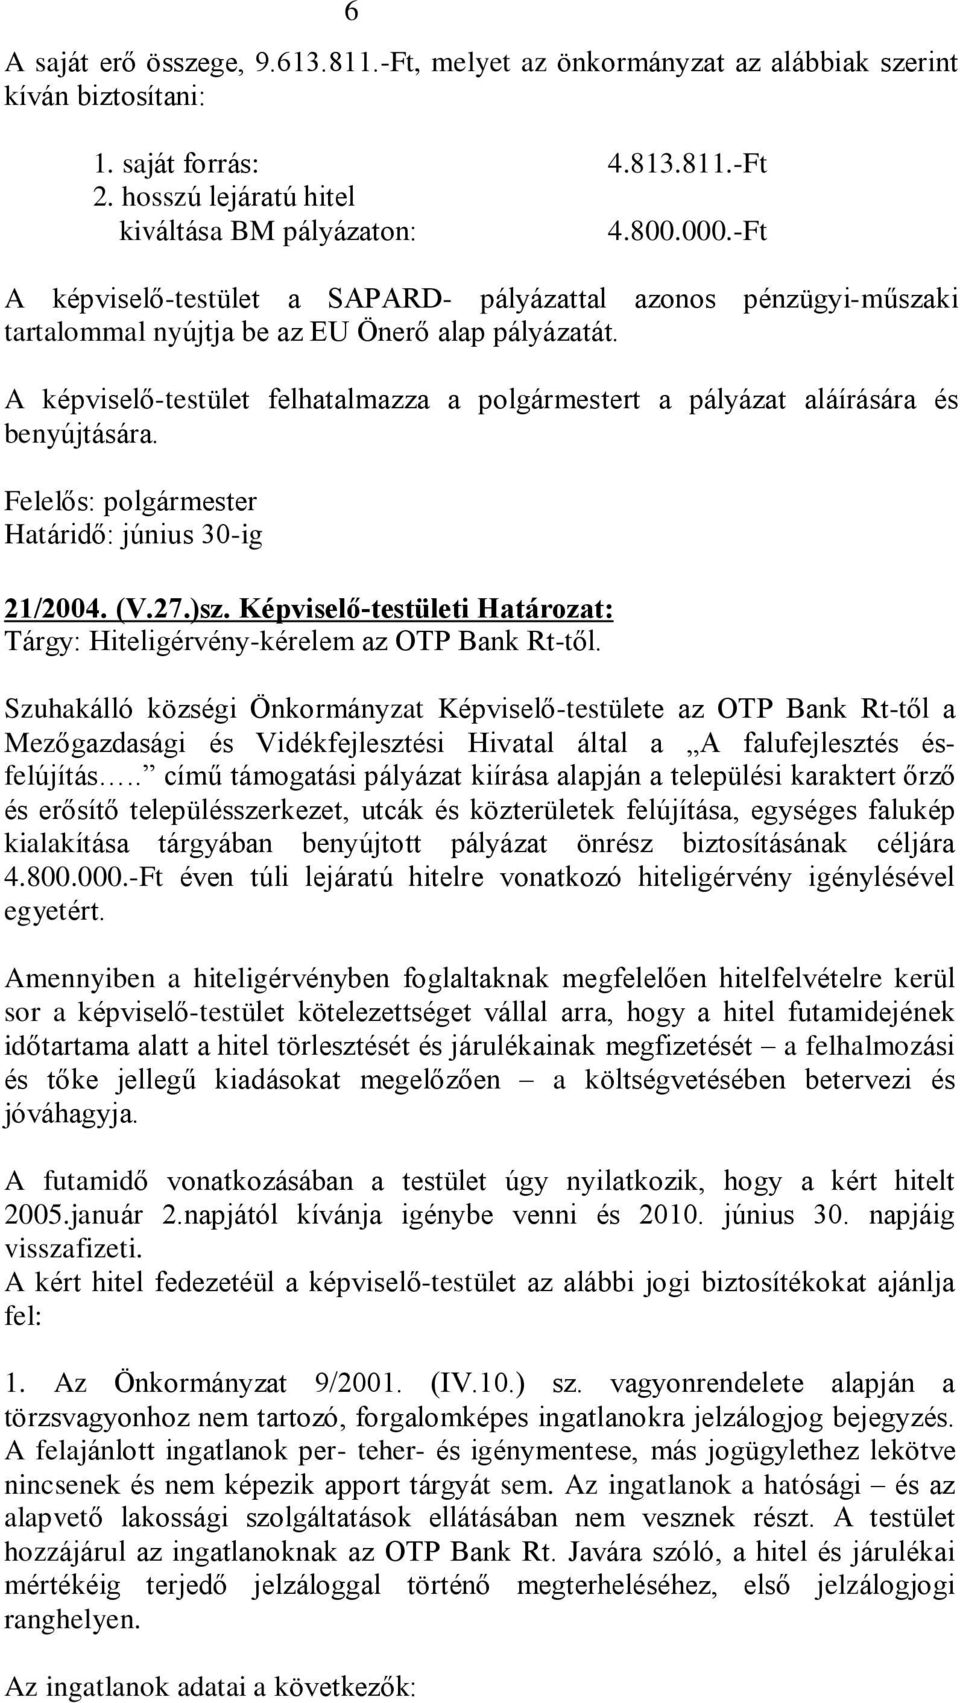 A képviselõ-testület felhatalmazza a polgármestert a pályázat aláírására és benyújtására. Felelõs: polgármester Határidõ: június 30-ig 21/2004. (V.27.)sz.